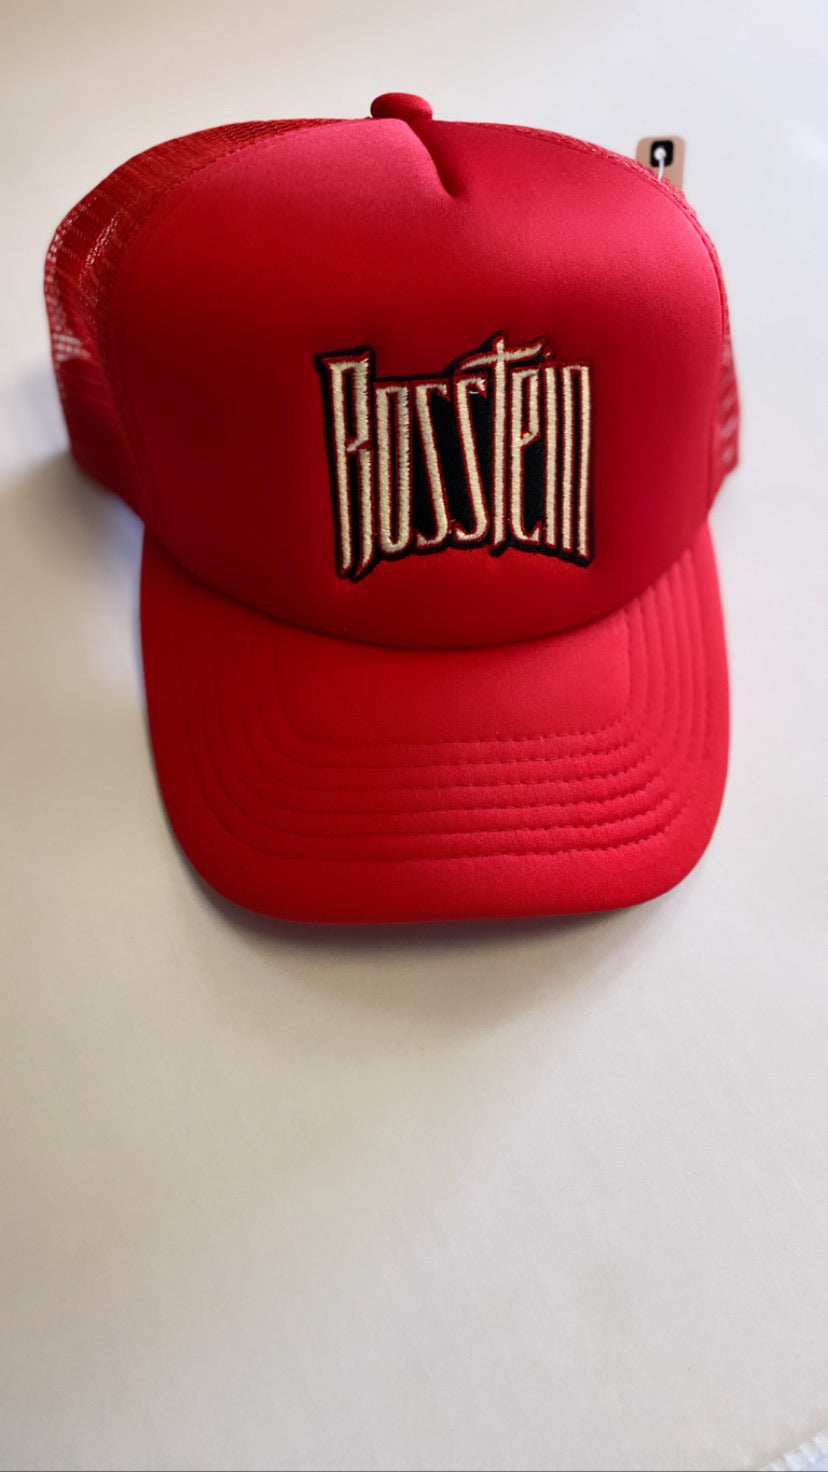 Red Rosstein trucker hat